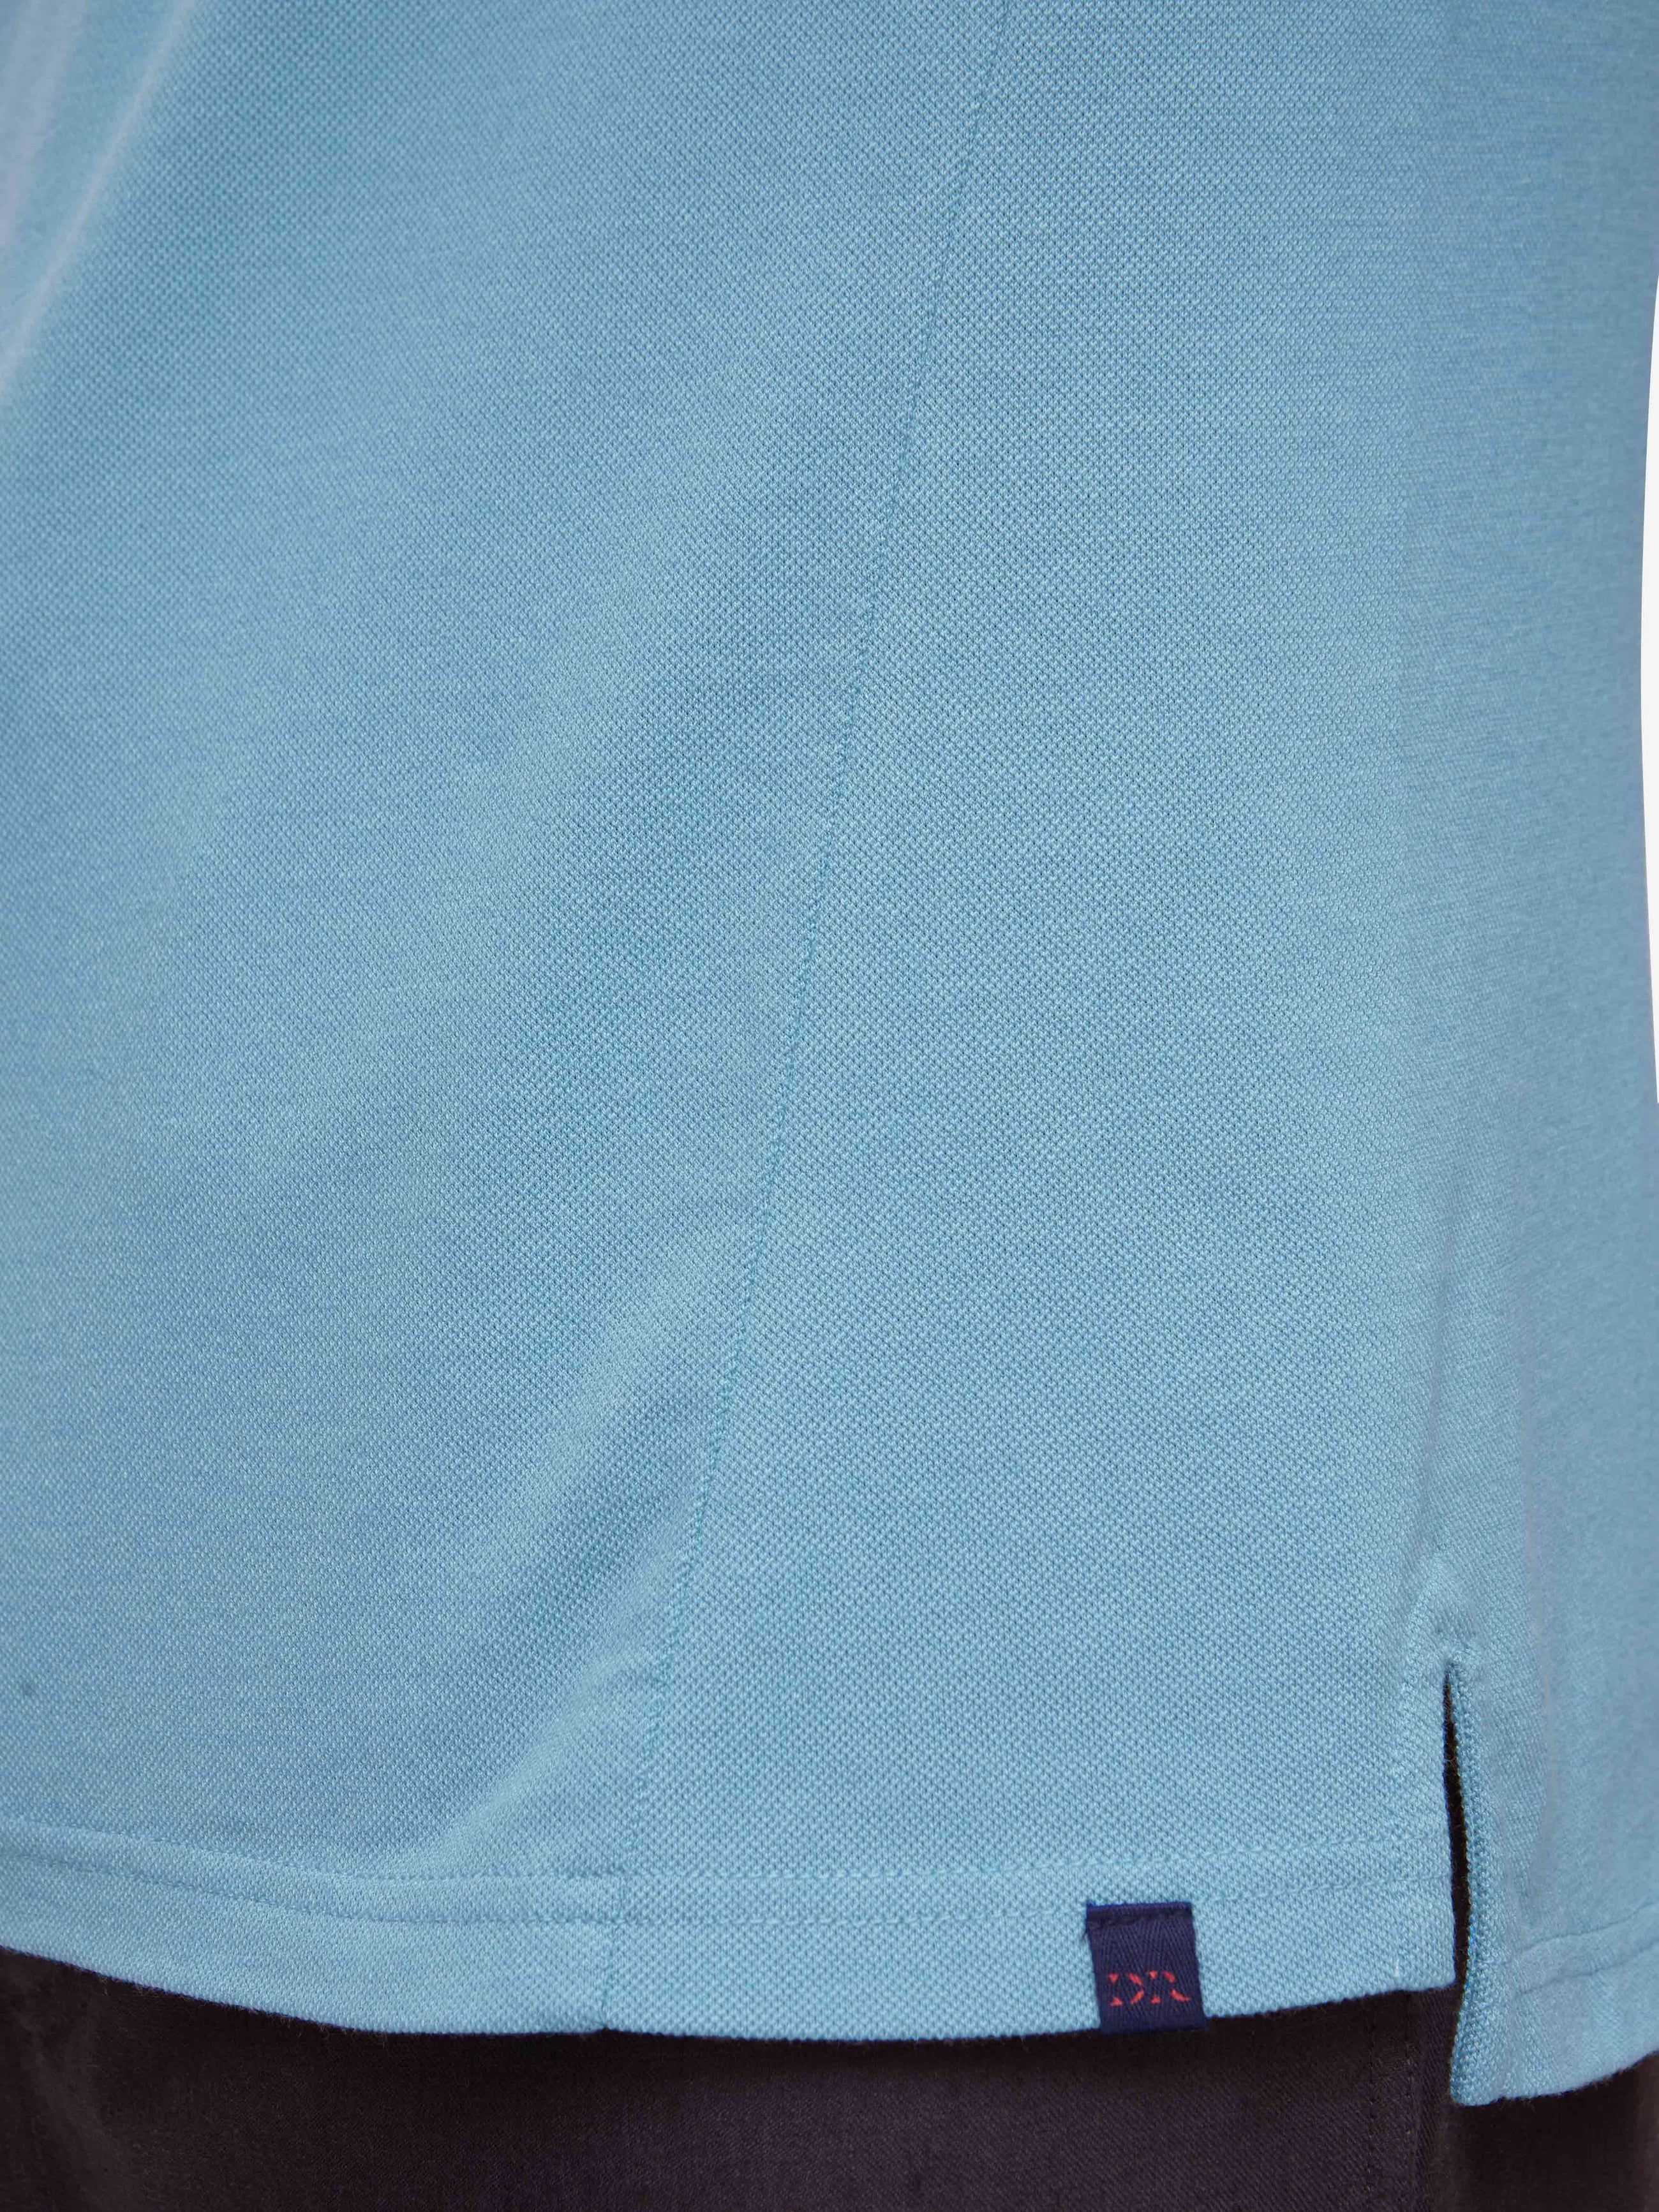 Men's Long Sleeve Polo Shirt Ramsay 4 Pique Cotton Tencel Blue